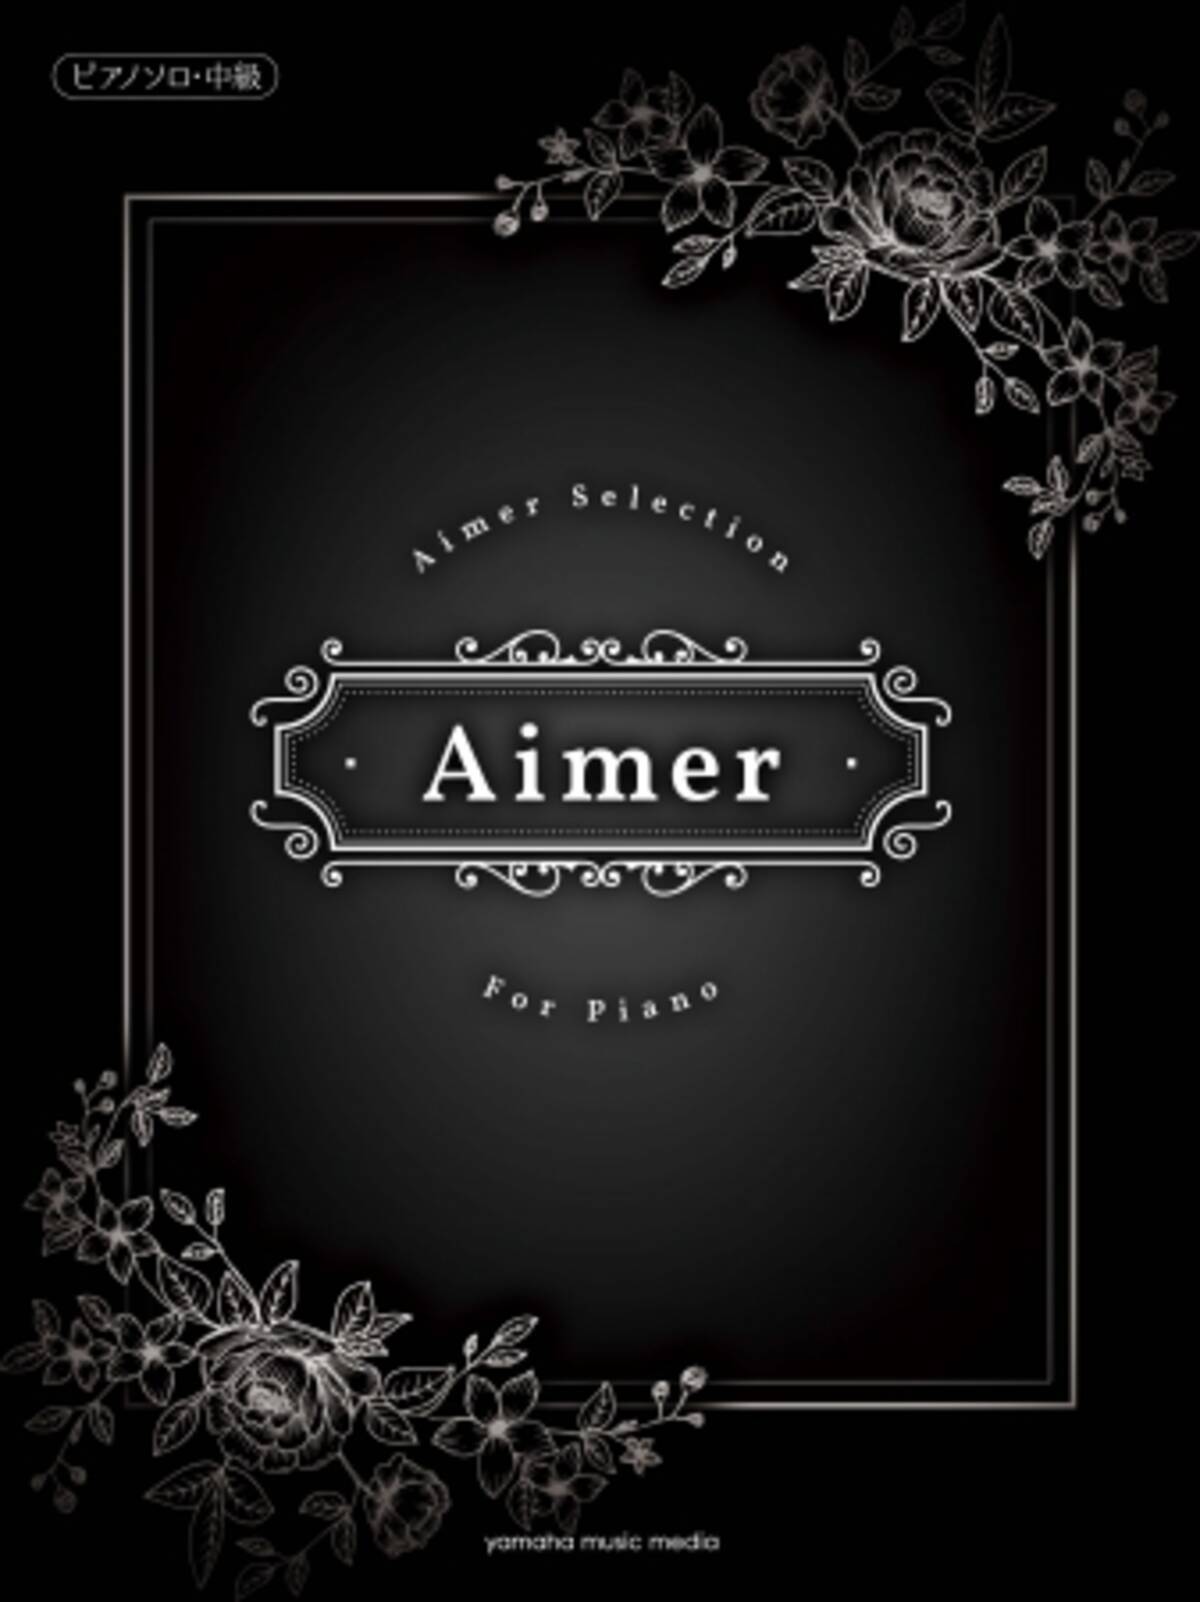 ピアノソロ楽譜集 Aimer Selection For Piano 発売開始 蝶々結び 茜さす Brave Shine など これまでにリリースされた楽曲から全15曲を収載 17年6月1日 エキサイトニュース